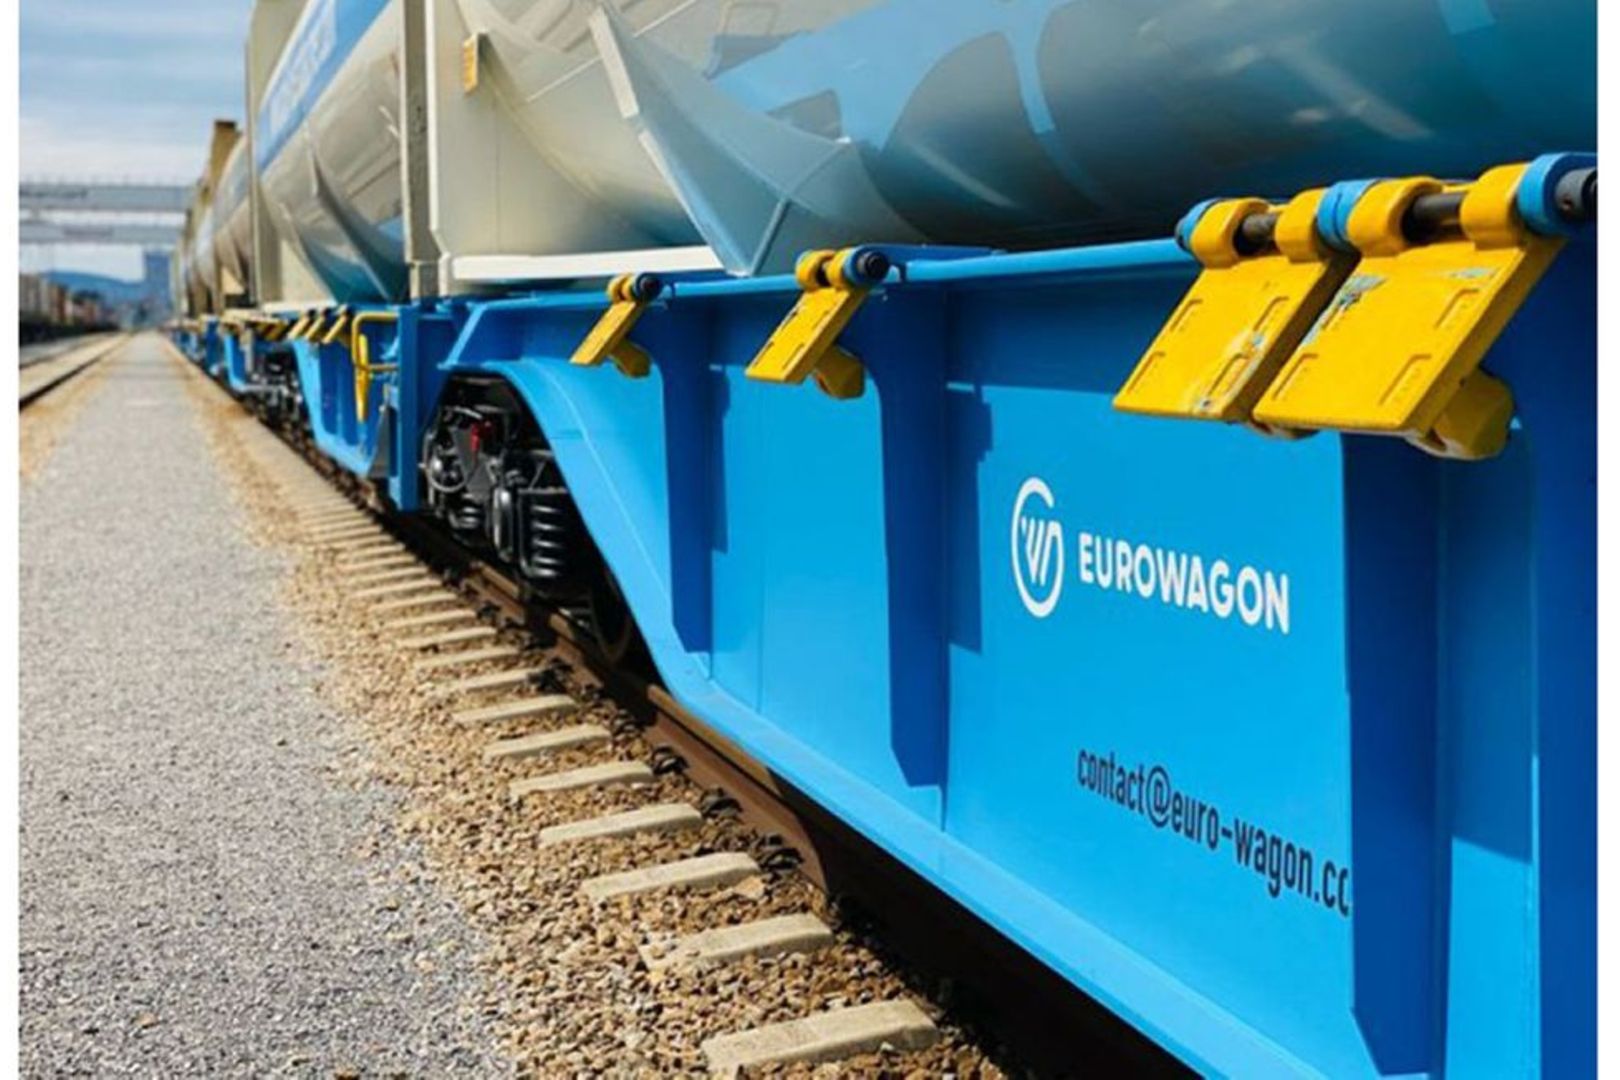 Tanzania Railways Corporation (TRC) terminates contract with Eurowagon |  The Citizen